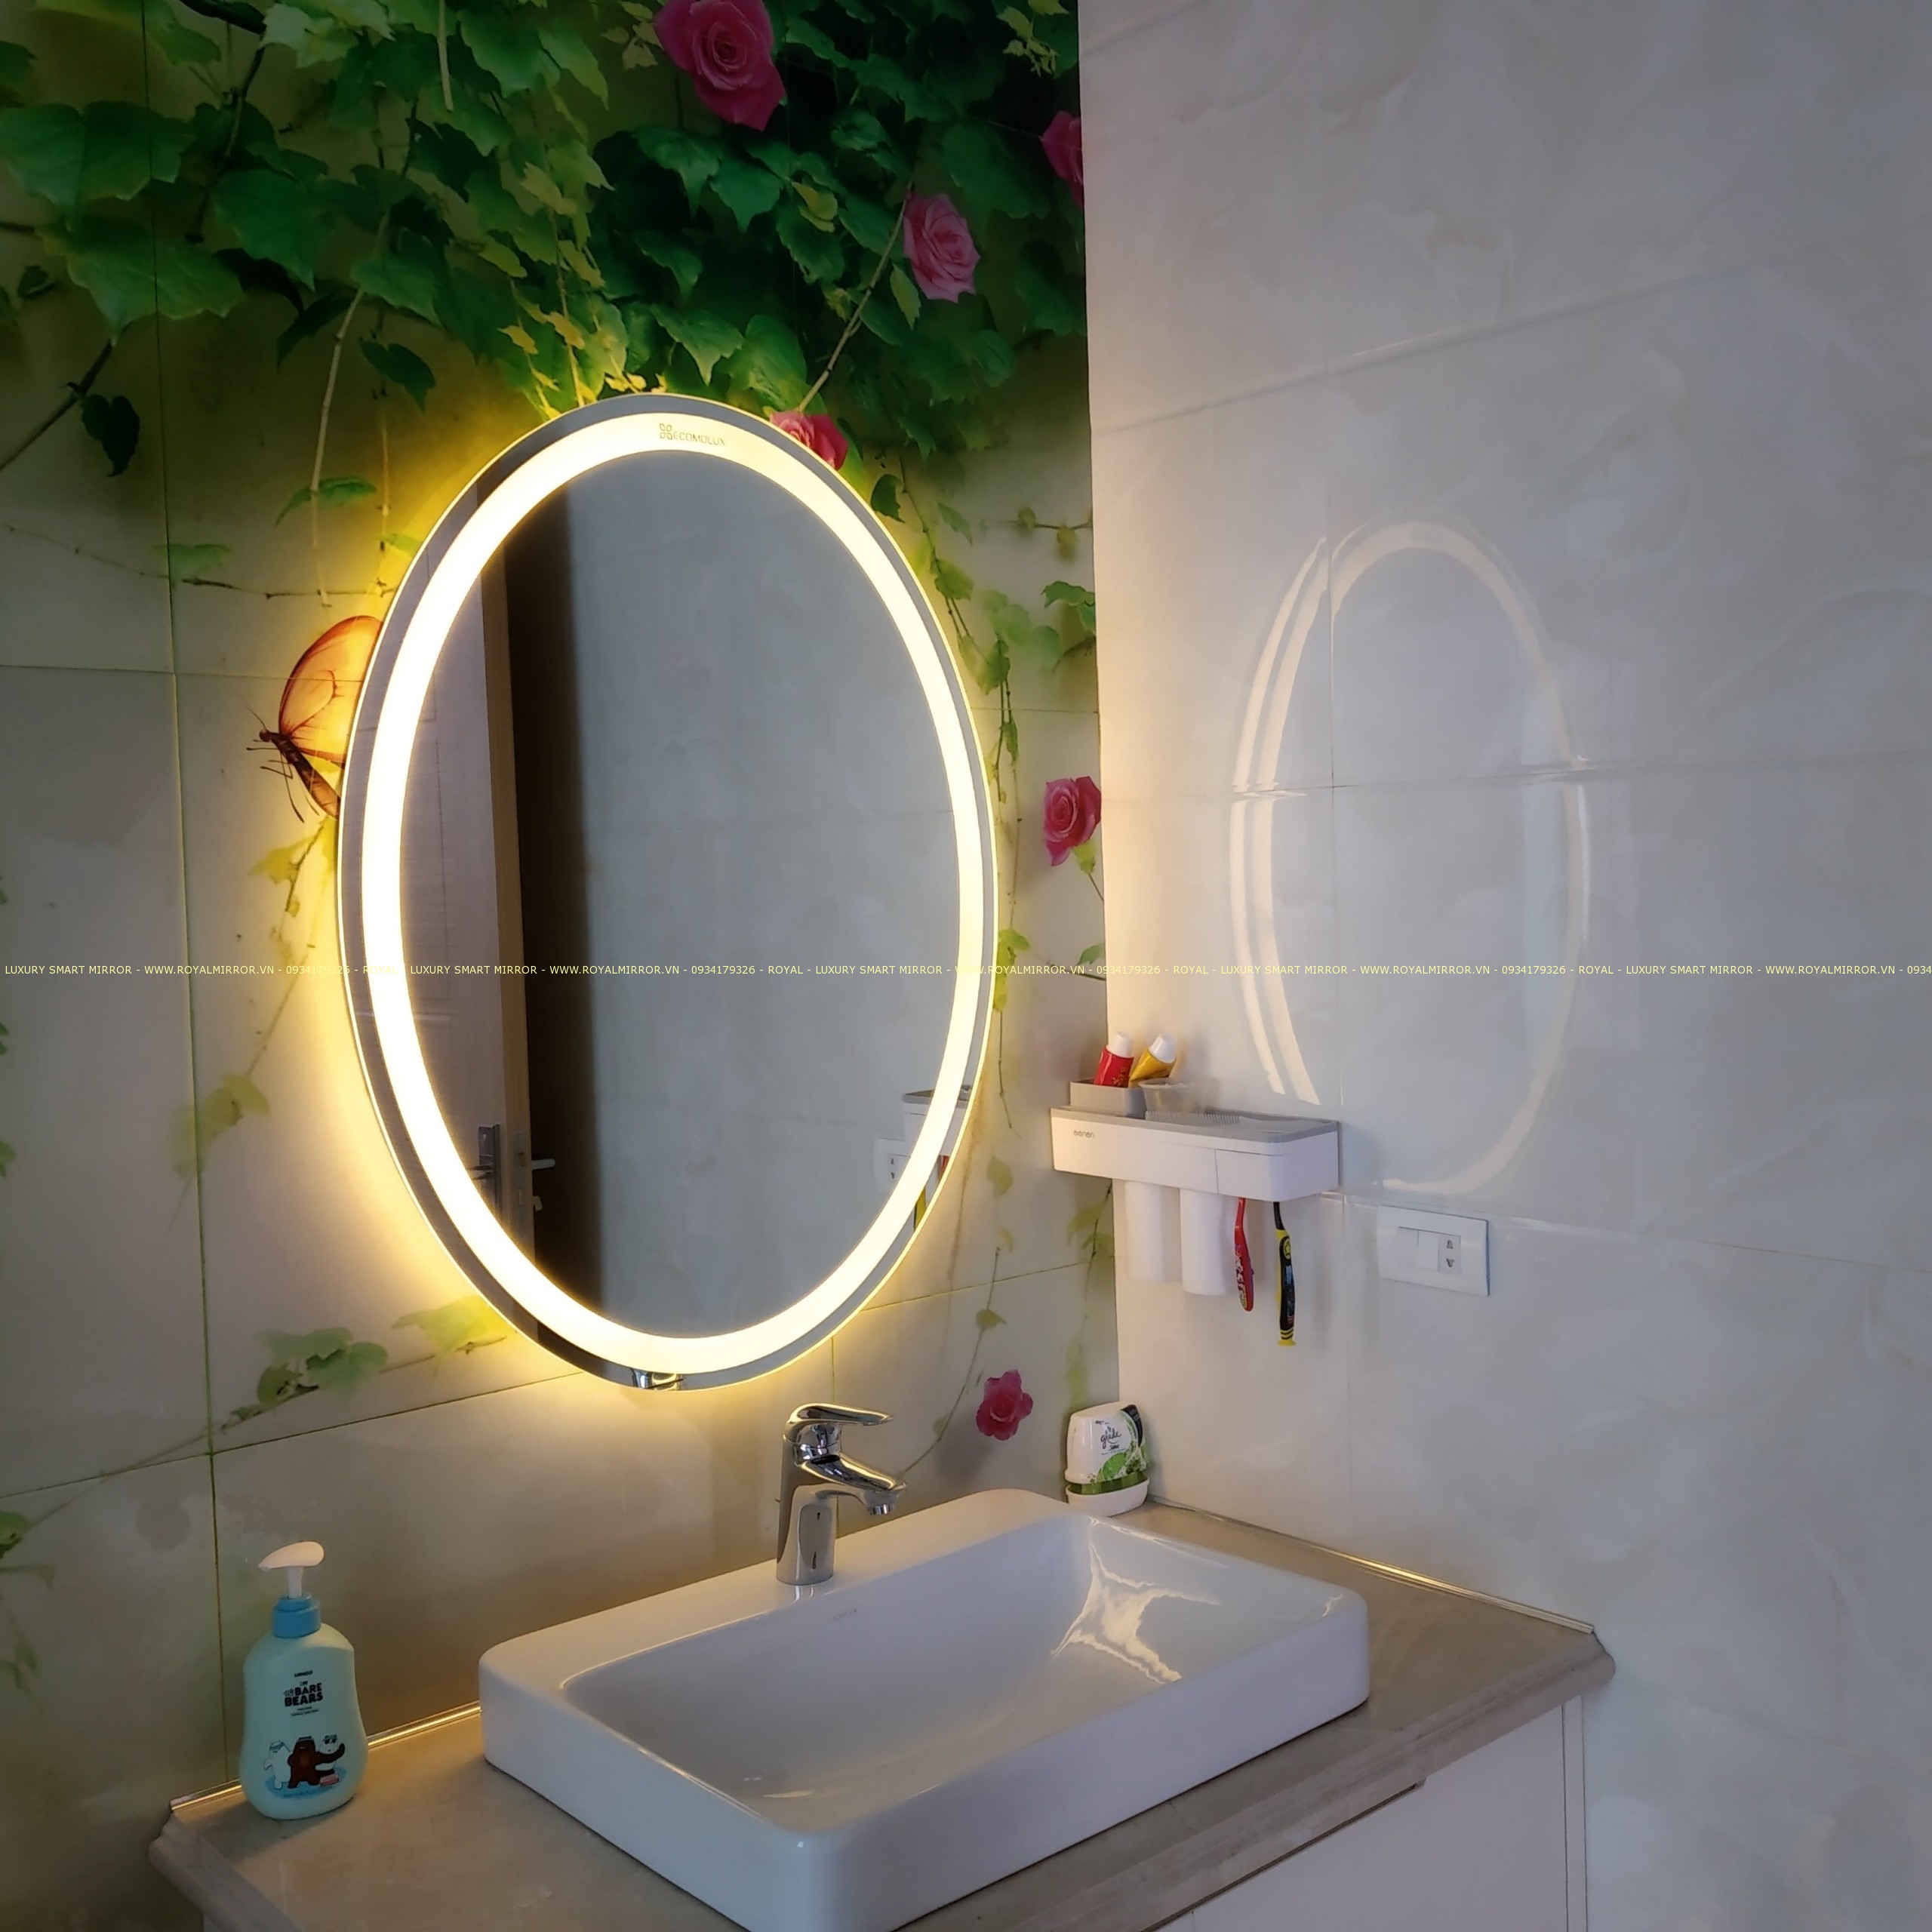 Gương đèn LED phòng tắm cao cấp: Gương đèn LED phòng tắm cao cấp giúp tạo ra một không gian thư giãn, đẳng cấp và sang trọng. Ánh sáng LED tinh khiết giúp bạn đánh răng hoặc trang điểm một cách dễ dàng mặt dù ở trong môi trường tối. Đây là lựa chọn tuyệt vời cho các không gian nội thất bật lên ánh sáng và sáng tạo.